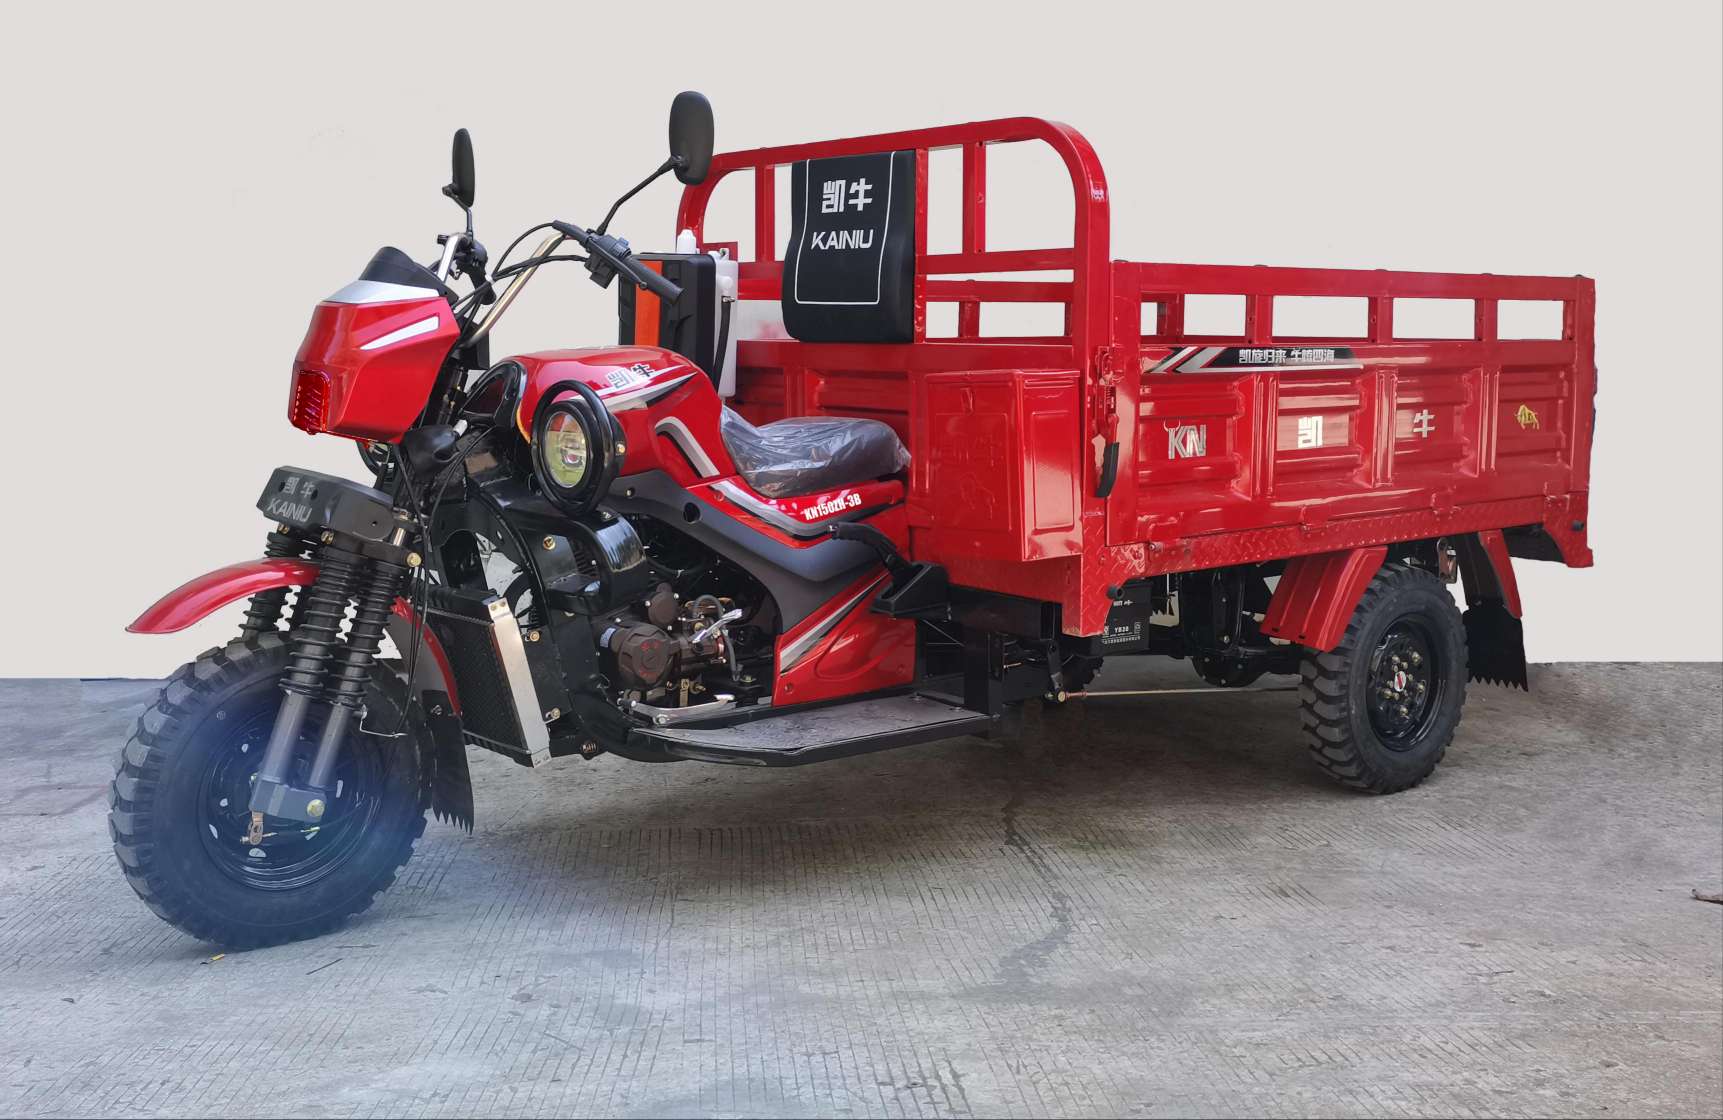 正三轮摩托车|产品中心-重庆双狮摩托车制造有限公司